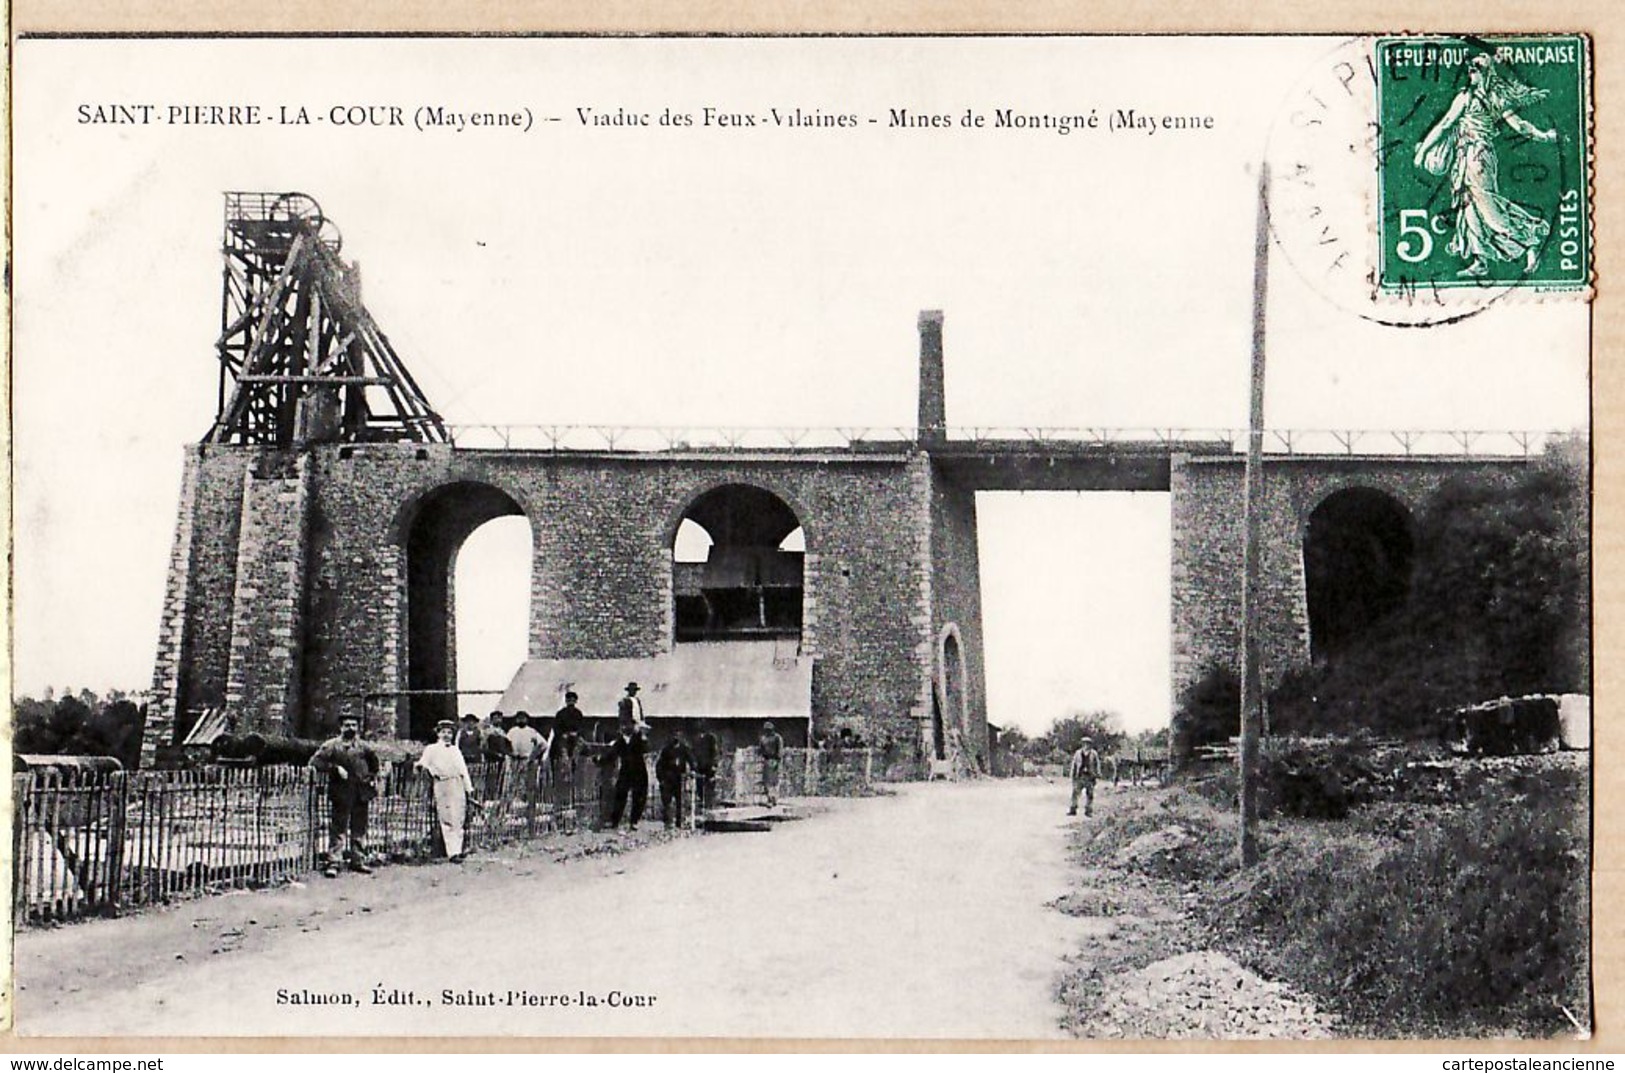 X53008 SAINT PIERRE LA COUR 53-Mayenne Mines De MONTIGNE Viaduc Des FEUX VILAINES 1910s à COUSIN Garenne Colombes - Mayenne